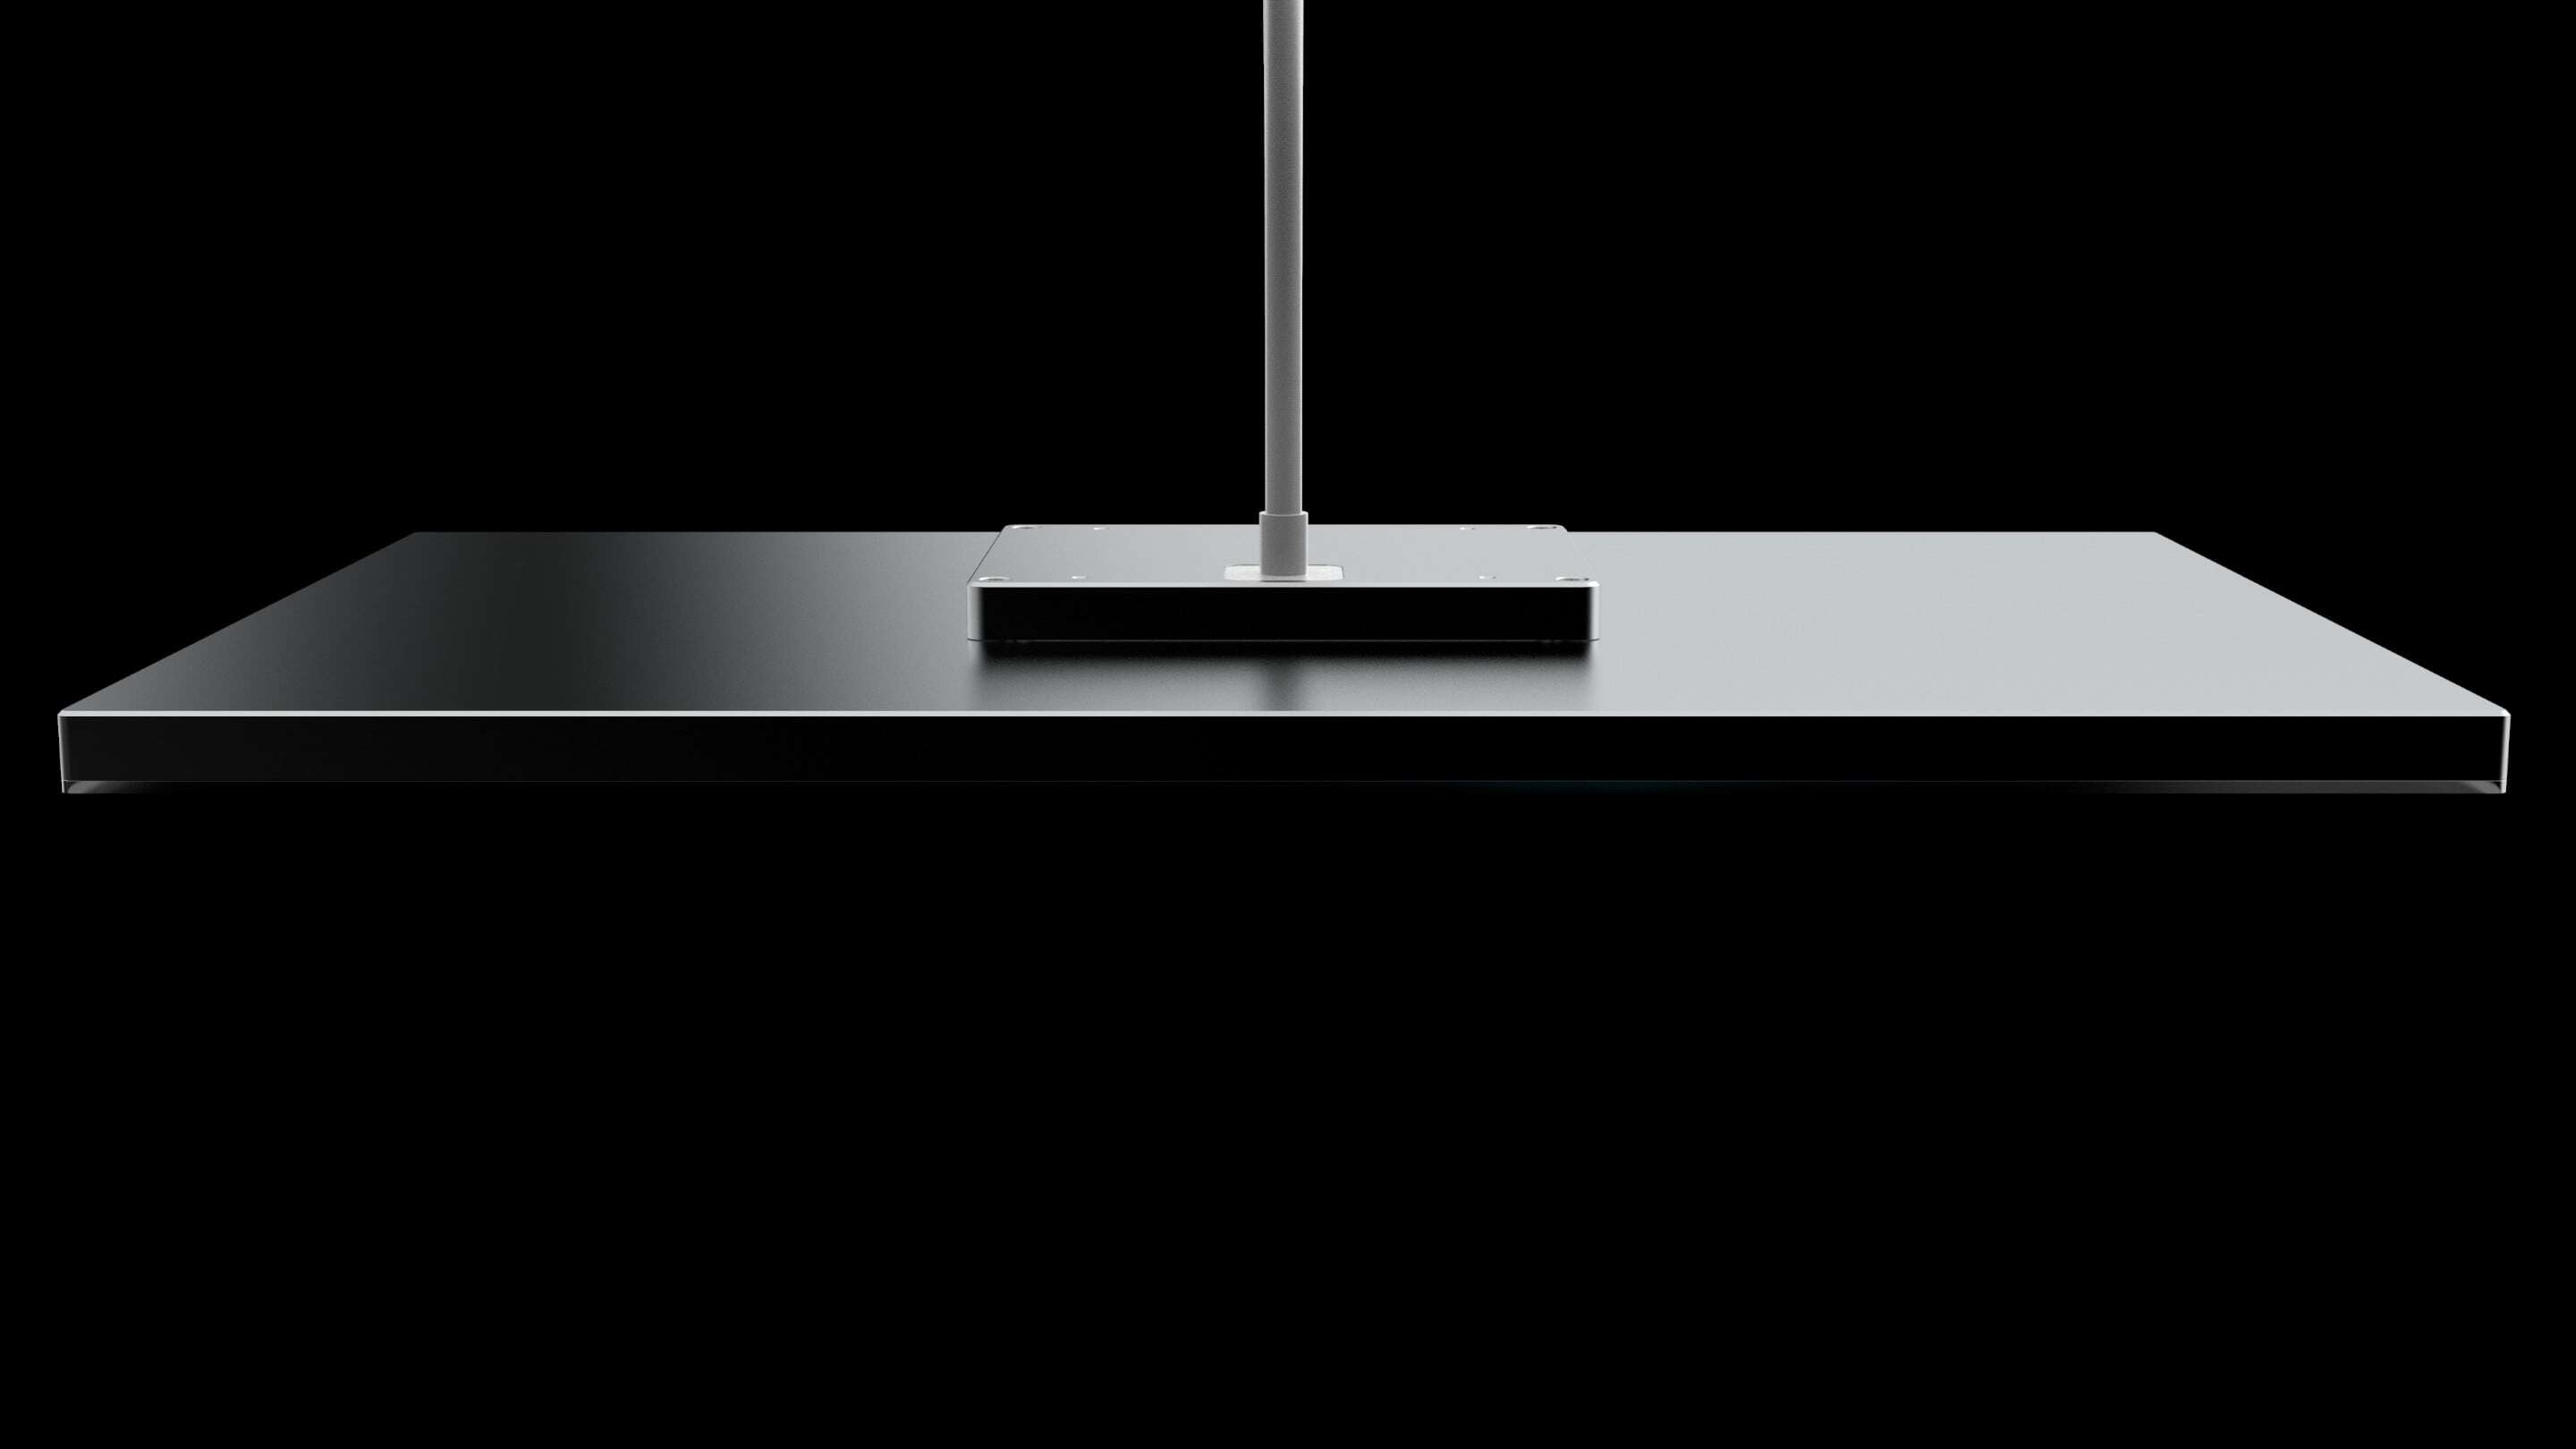 Design - Design en kabel et svart rektangulært bord med en stang